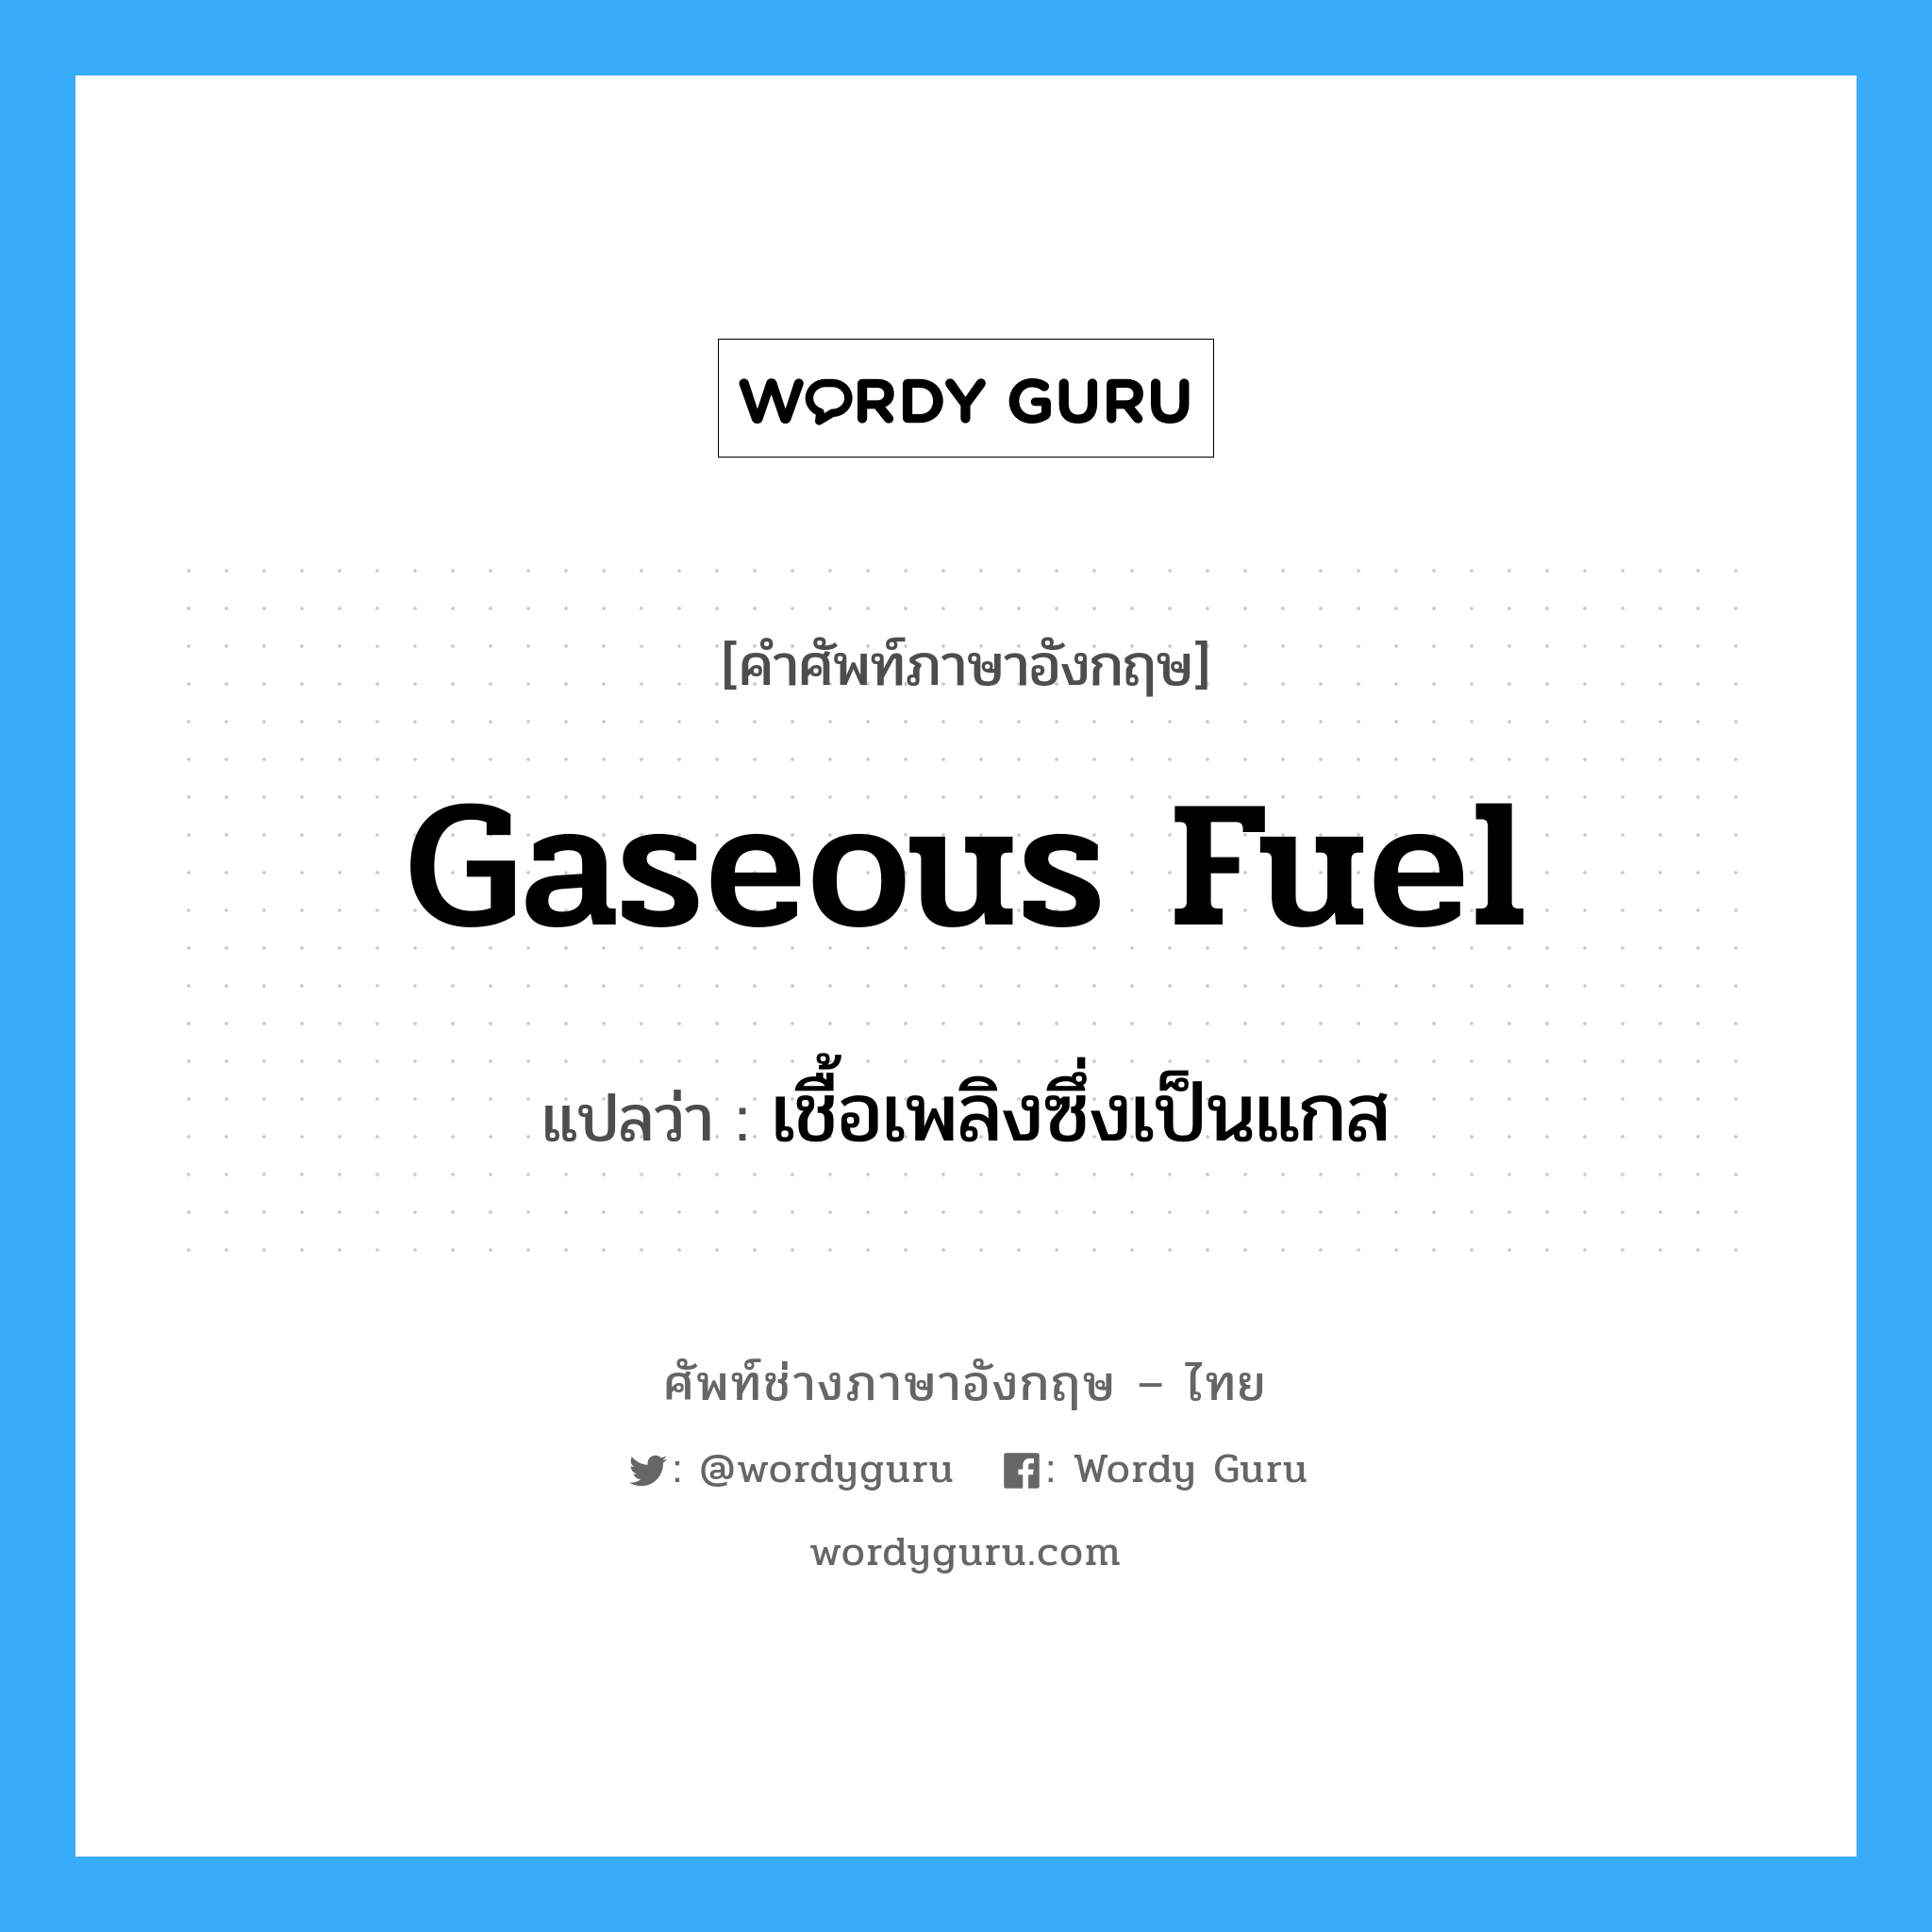 gaseous fuel แปลว่า?, คำศัพท์ช่างภาษาอังกฤษ - ไทย gaseous fuel คำศัพท์ภาษาอังกฤษ gaseous fuel แปลว่า เชื้อเพลิงซึ่งเป็นแกส